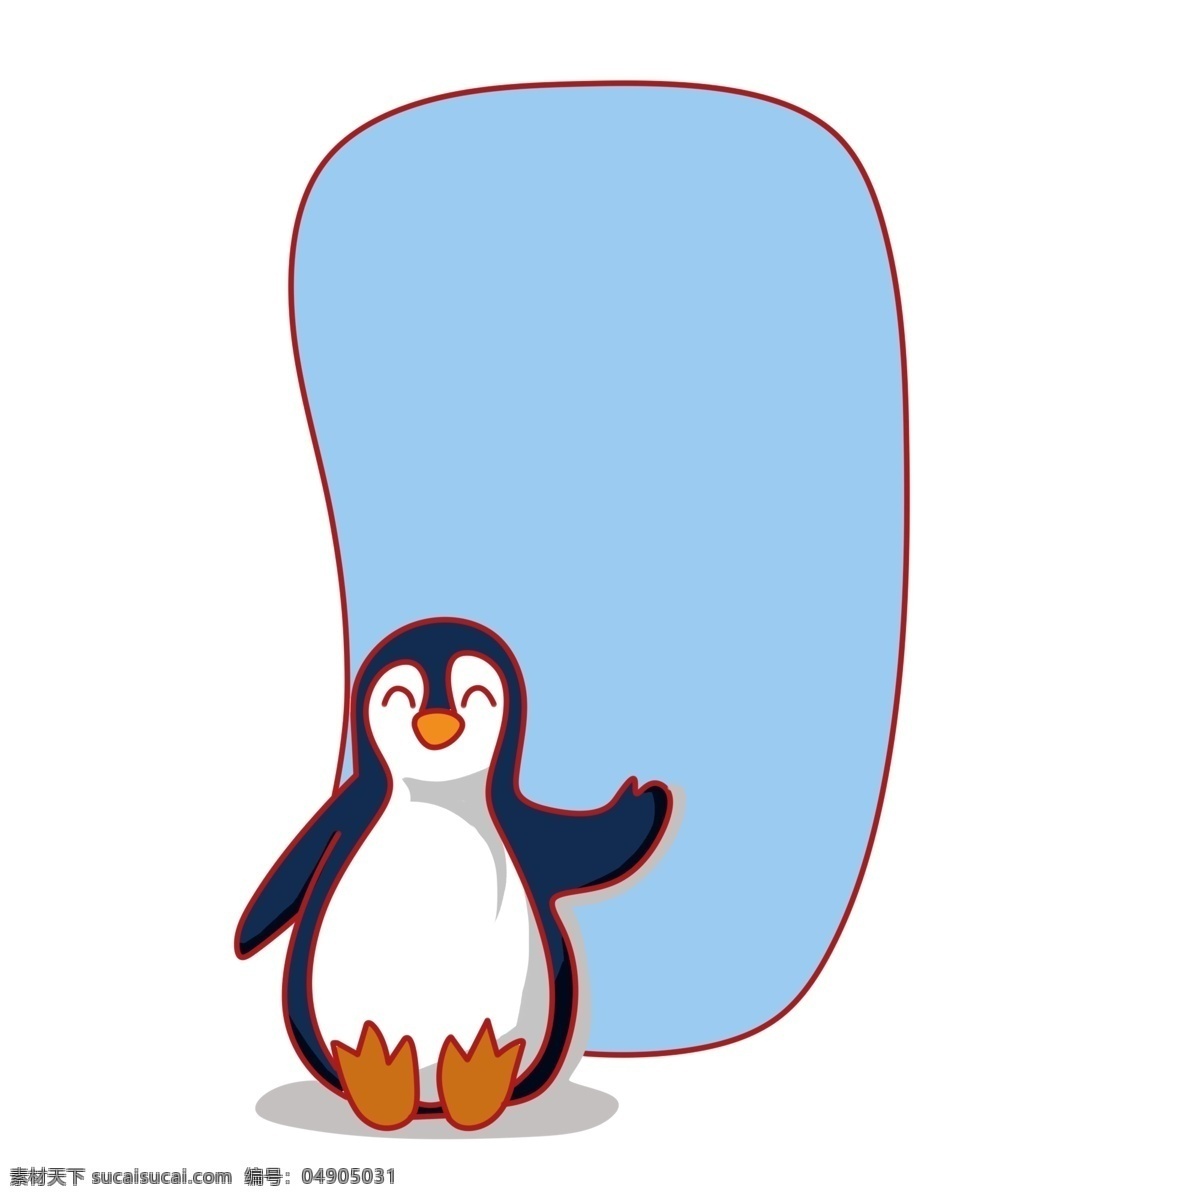 手绘 企鹅 蓝色 边框 蓝色边框 幼儿园背景 背景边框 动物边框 温馨提示 提示标语 可爱